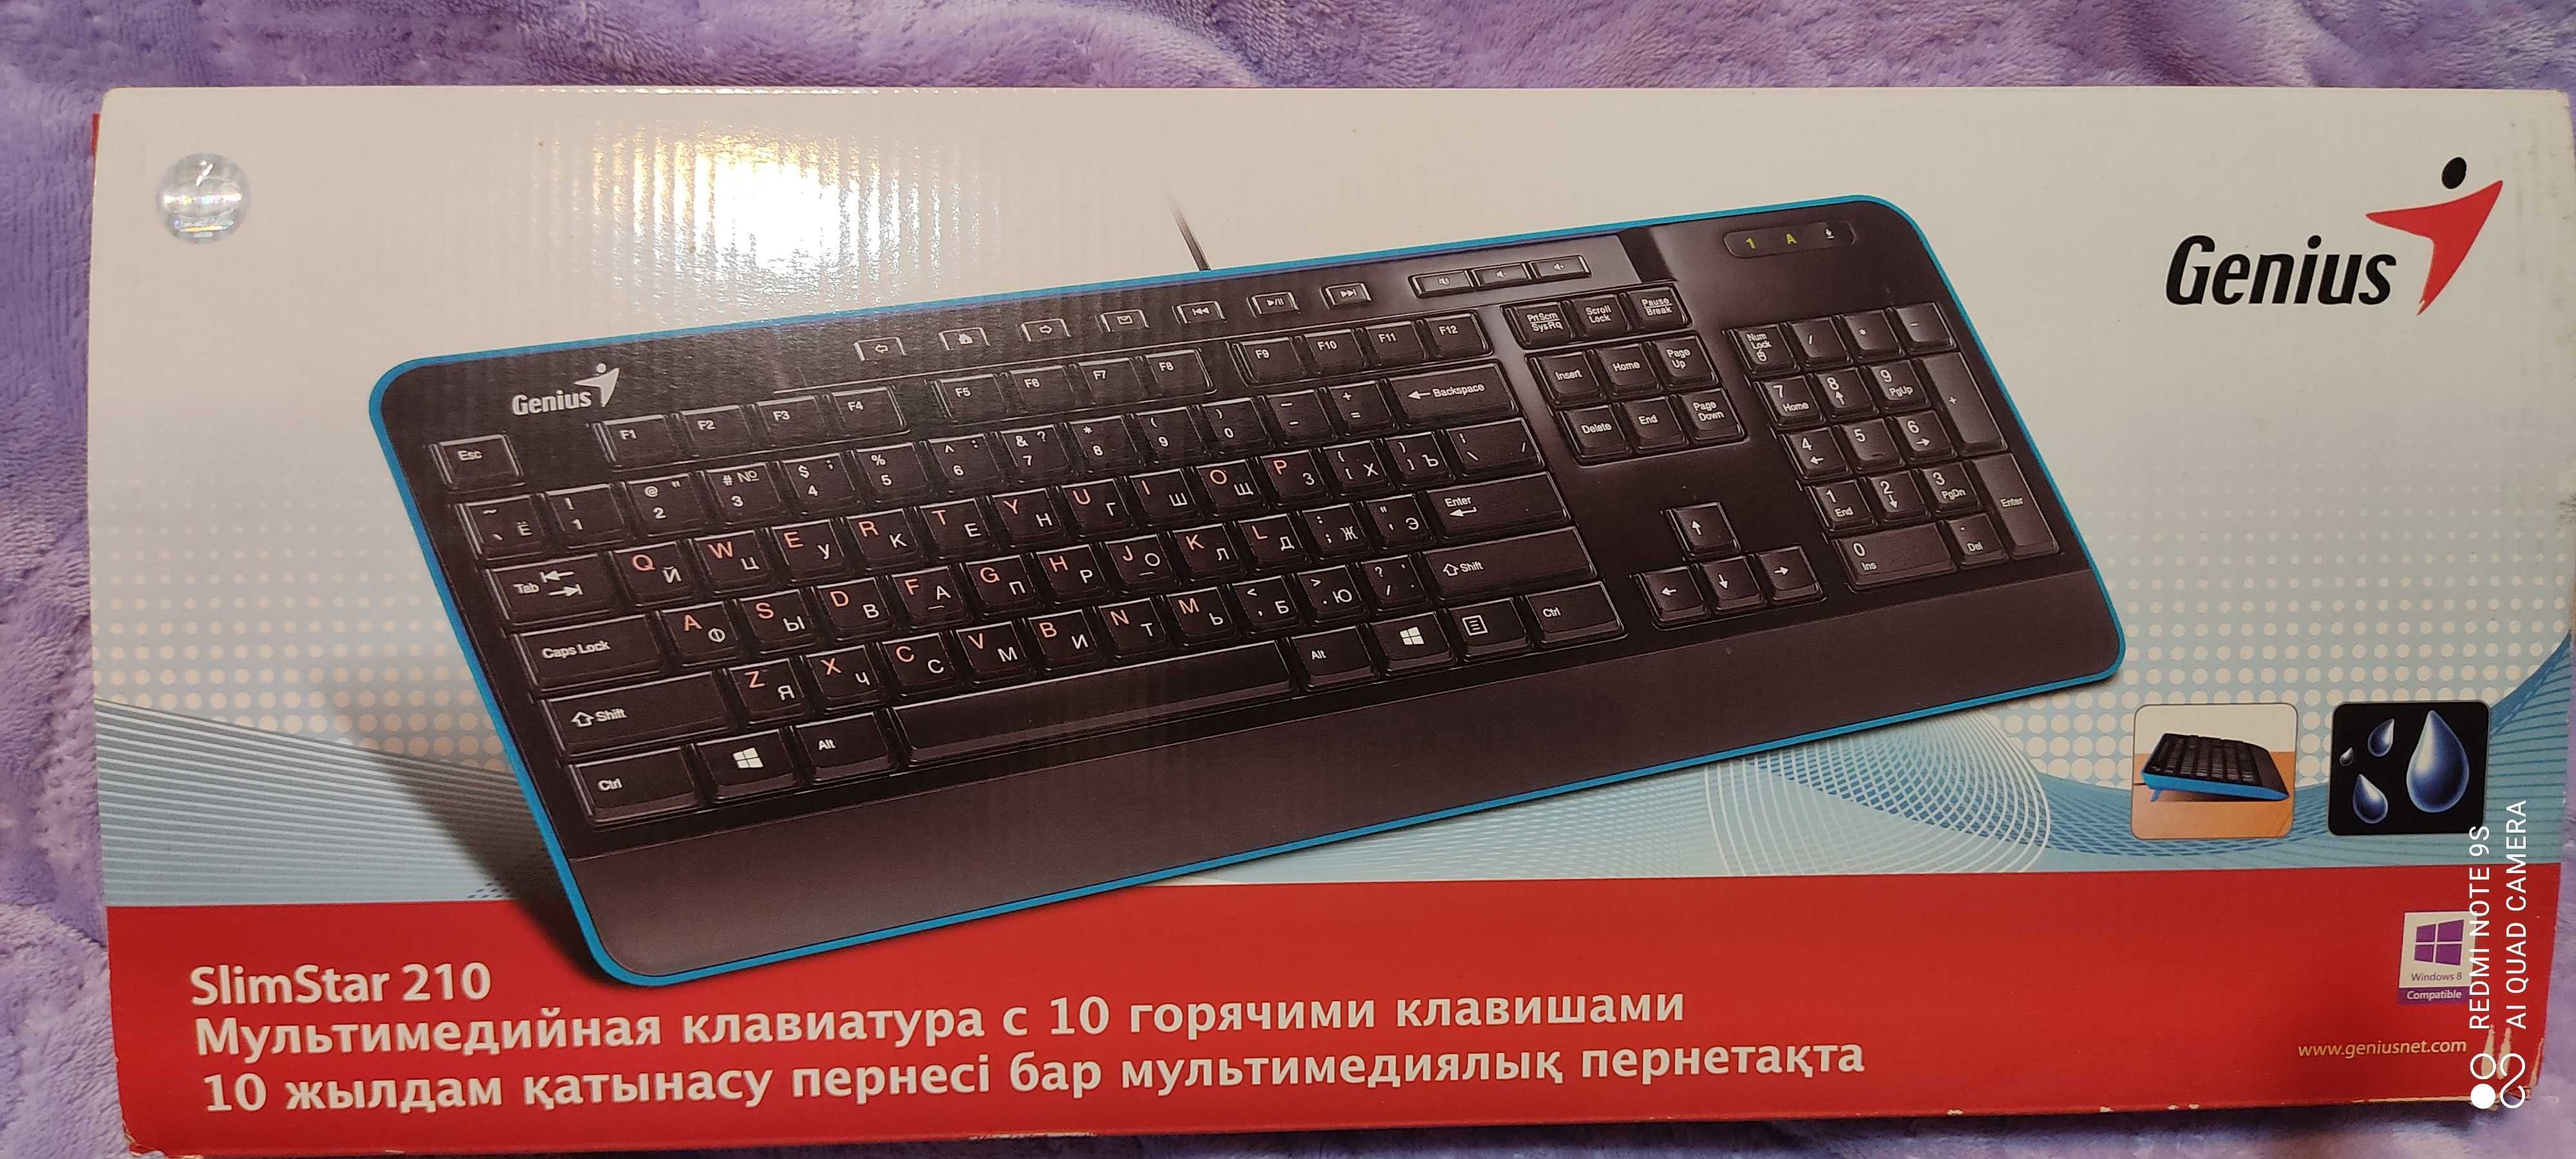 Продам клавиатуру для компьютера, Genius Slimstar 210